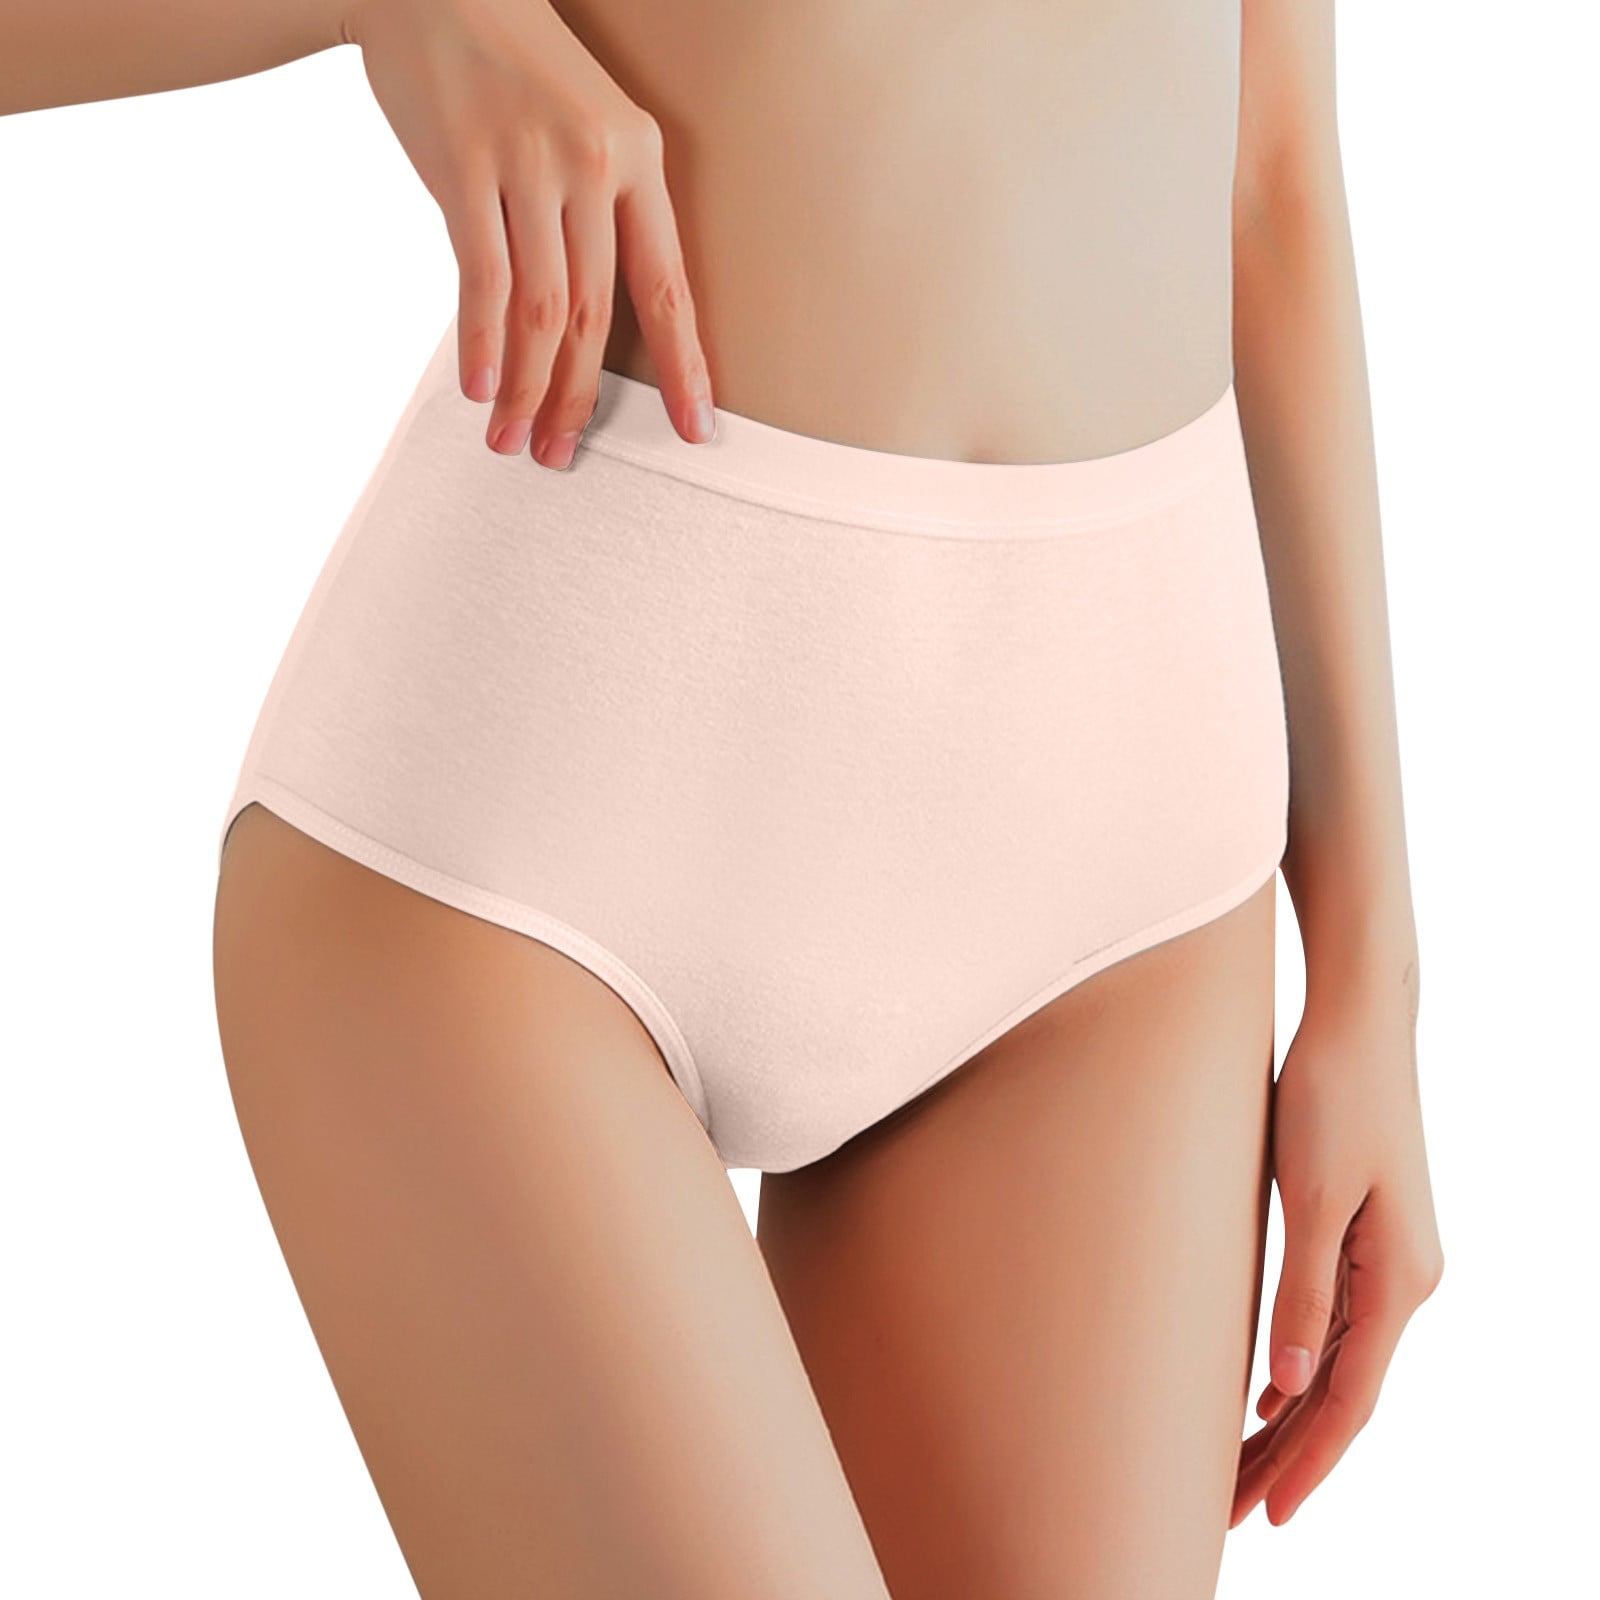 Leak Proof Underwear for Women T-Back Low-Rise Comfort Soft Underpants  Women's Panties Women's Panties No Wedgie Underwear Women 